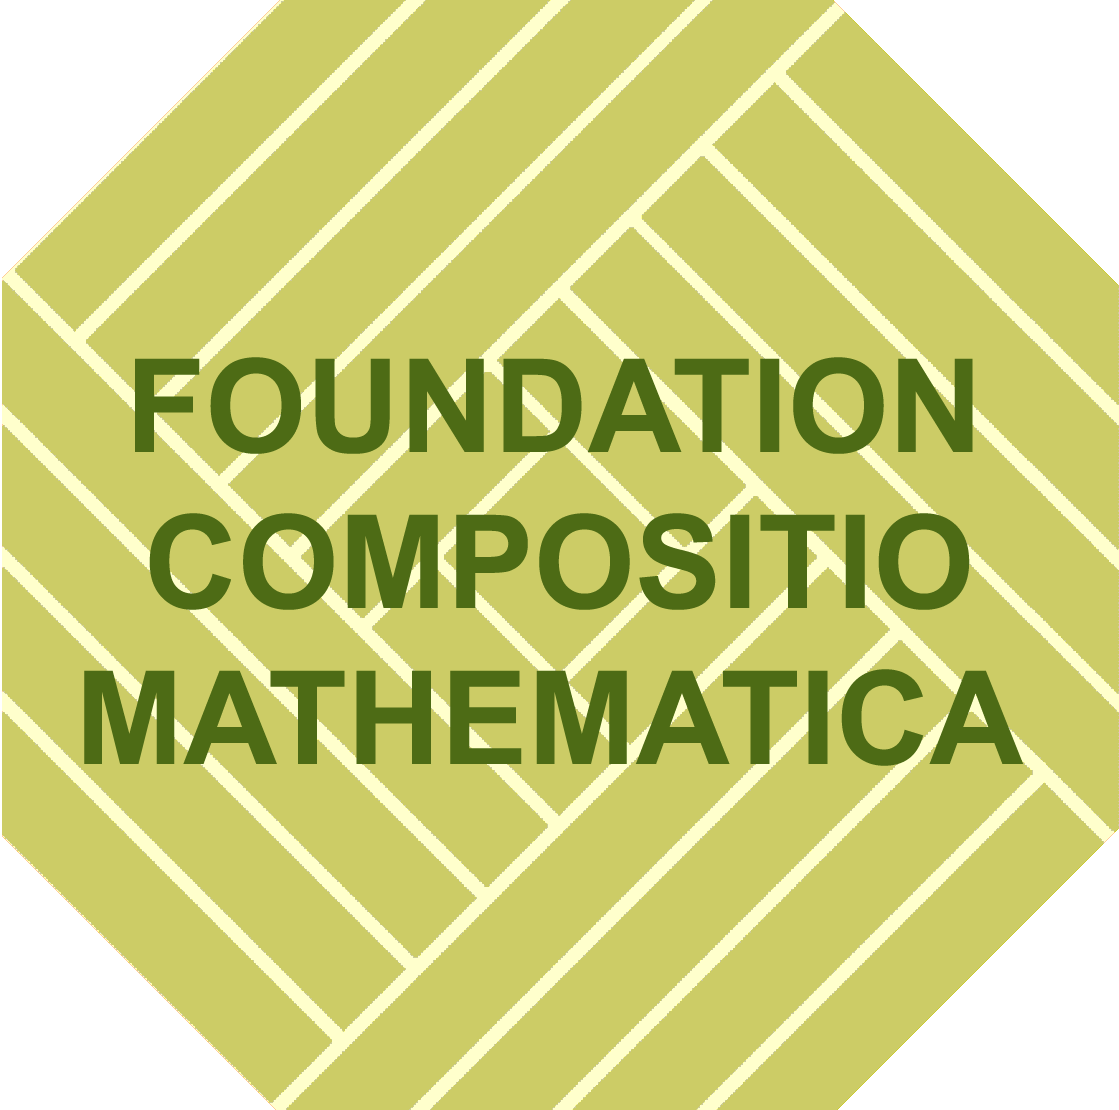 Compositio Mathematica